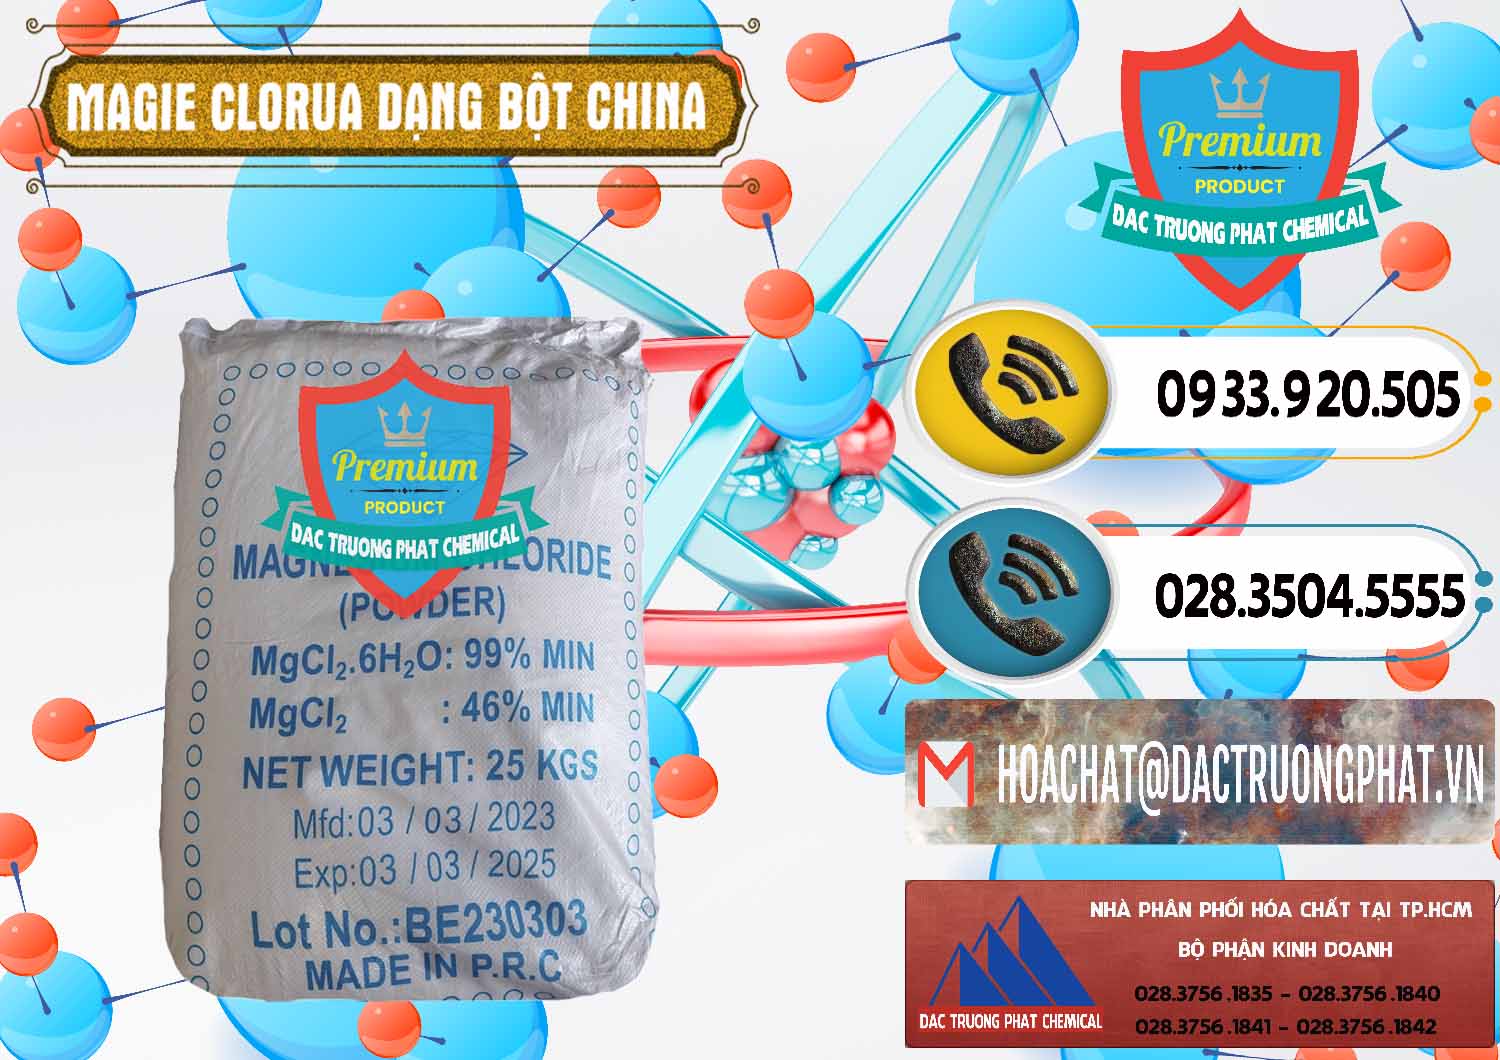 Cty chuyên bán & cung cấp Magie Clorua – MGCL2 96% Dạng Bột Logo Kim Cương Trung Quốc China - 0387 - Cty phân phối & cung ứng hóa chất tại TP.HCM - hoachatdetnhuom.vn